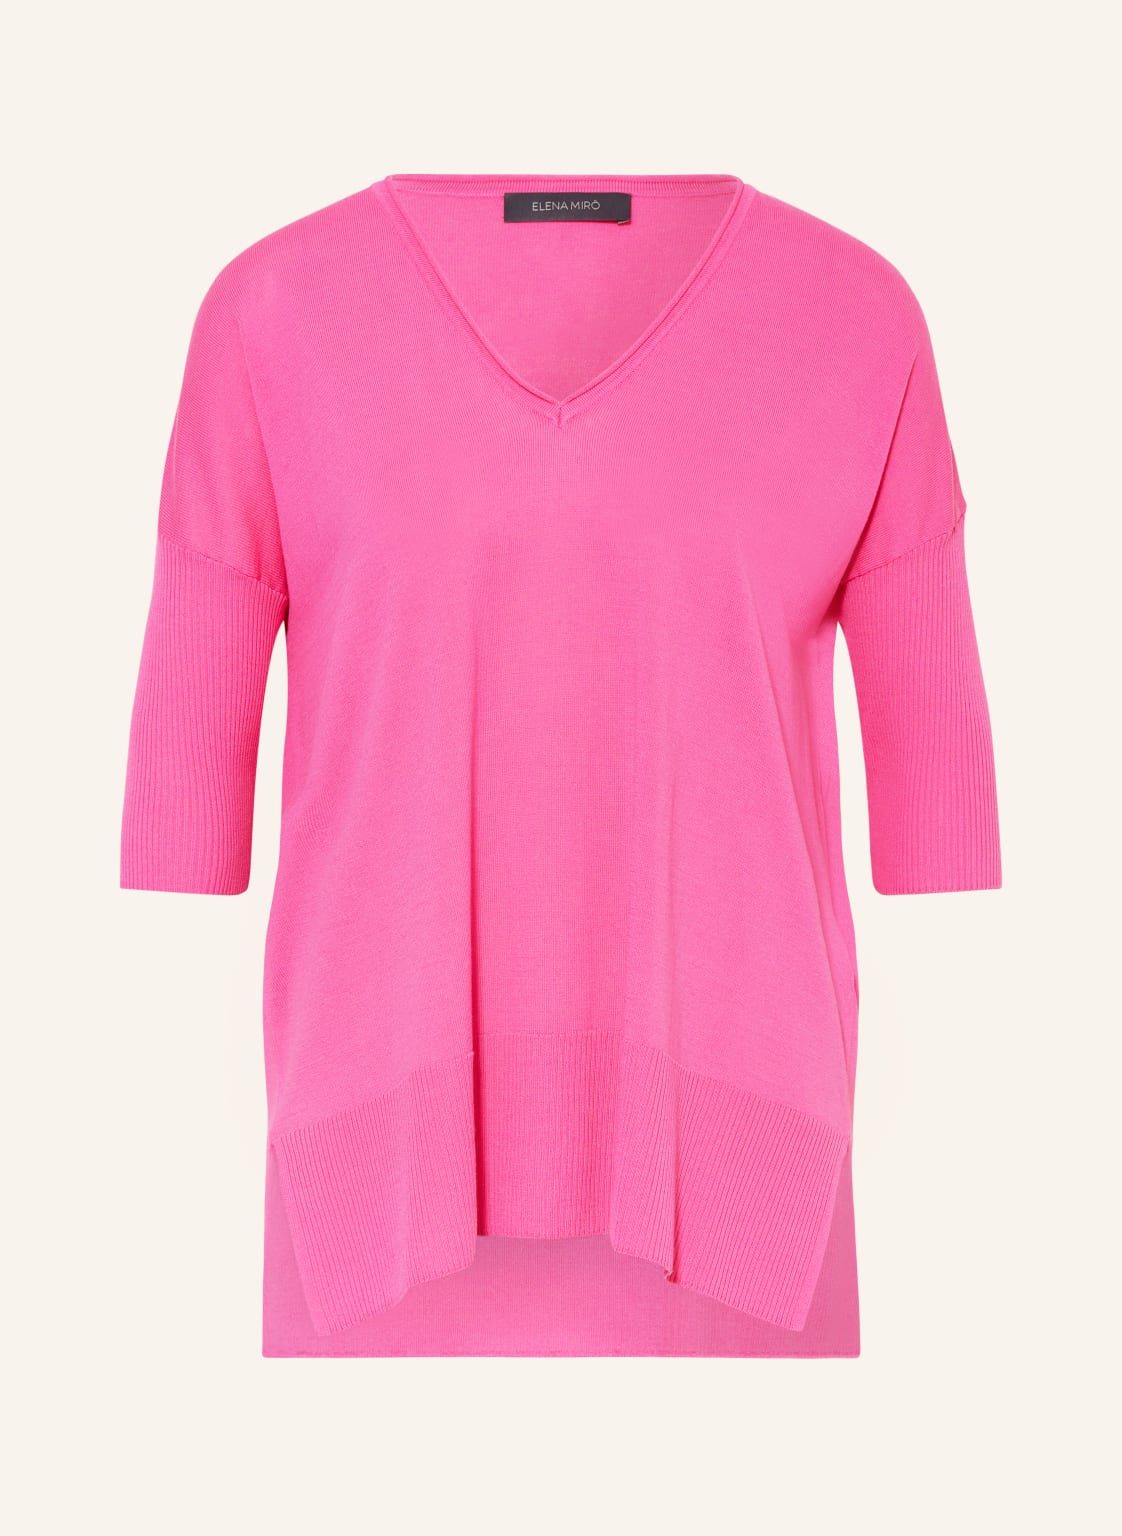 Elena Miro Strickshirt pink von ELENA MIRO